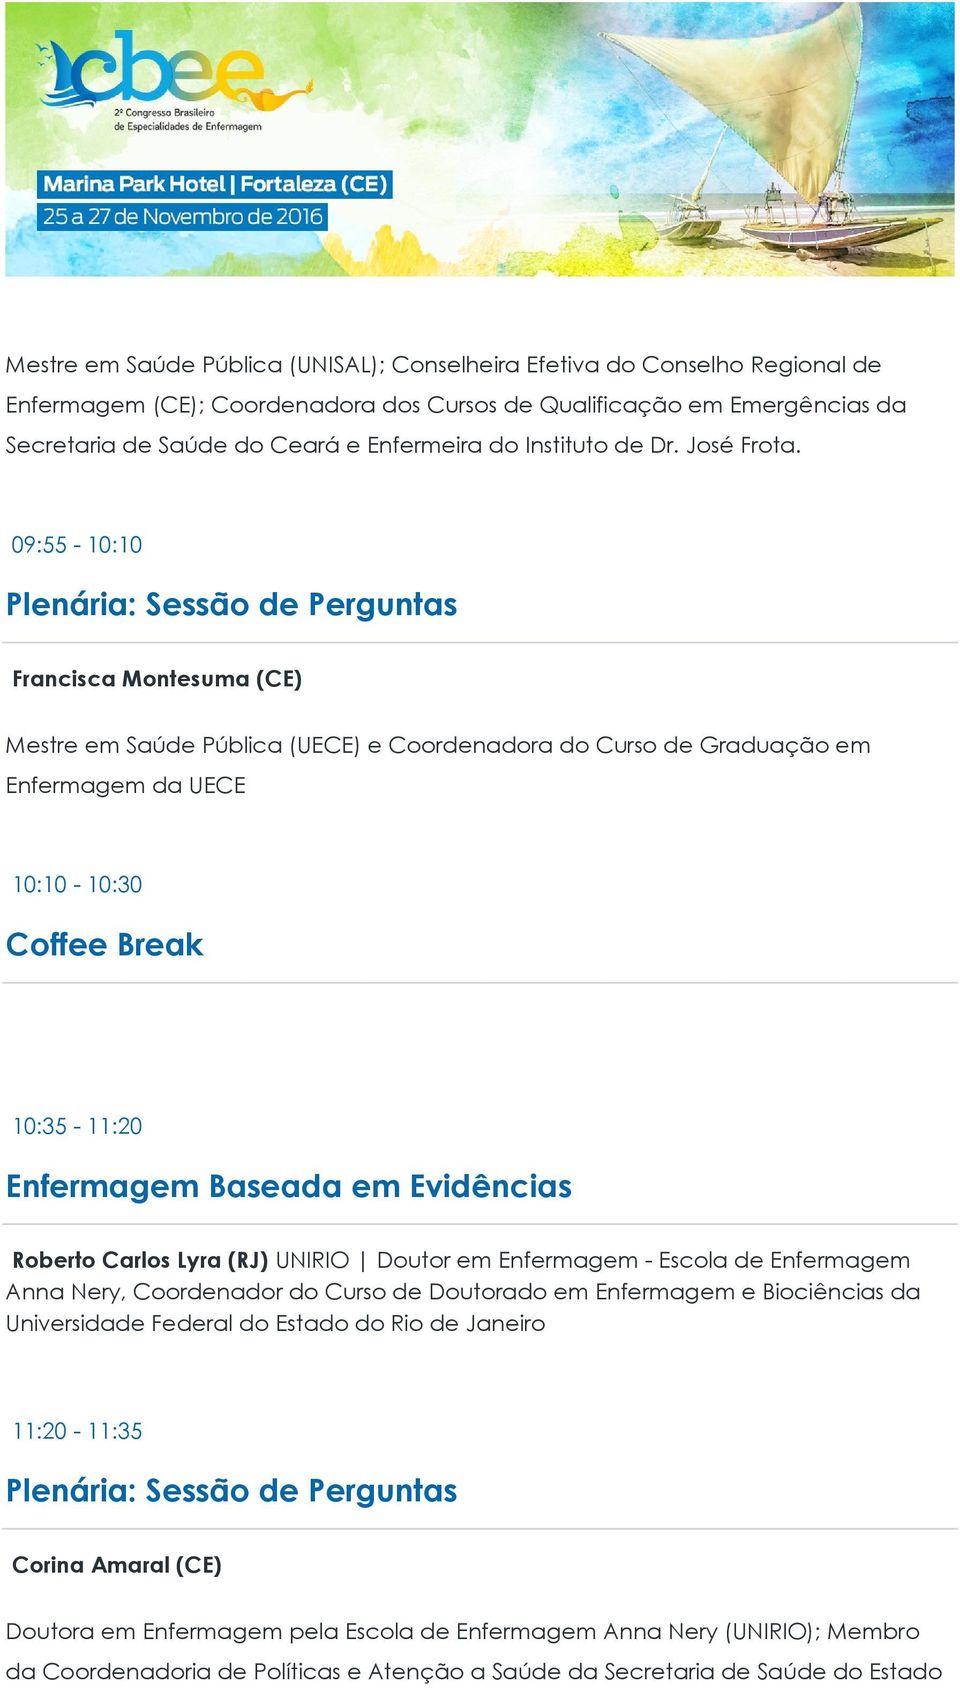 09:55-10:10 Francisca Montesuma (CE) Mestre em Saúde Pública (UECE) e Coordenadora do Curso de Graduação em Enfermagem da UECE 10:10-10:30 Coffee Break 10:35-11:20 Enfermagem Baseada em Evidências